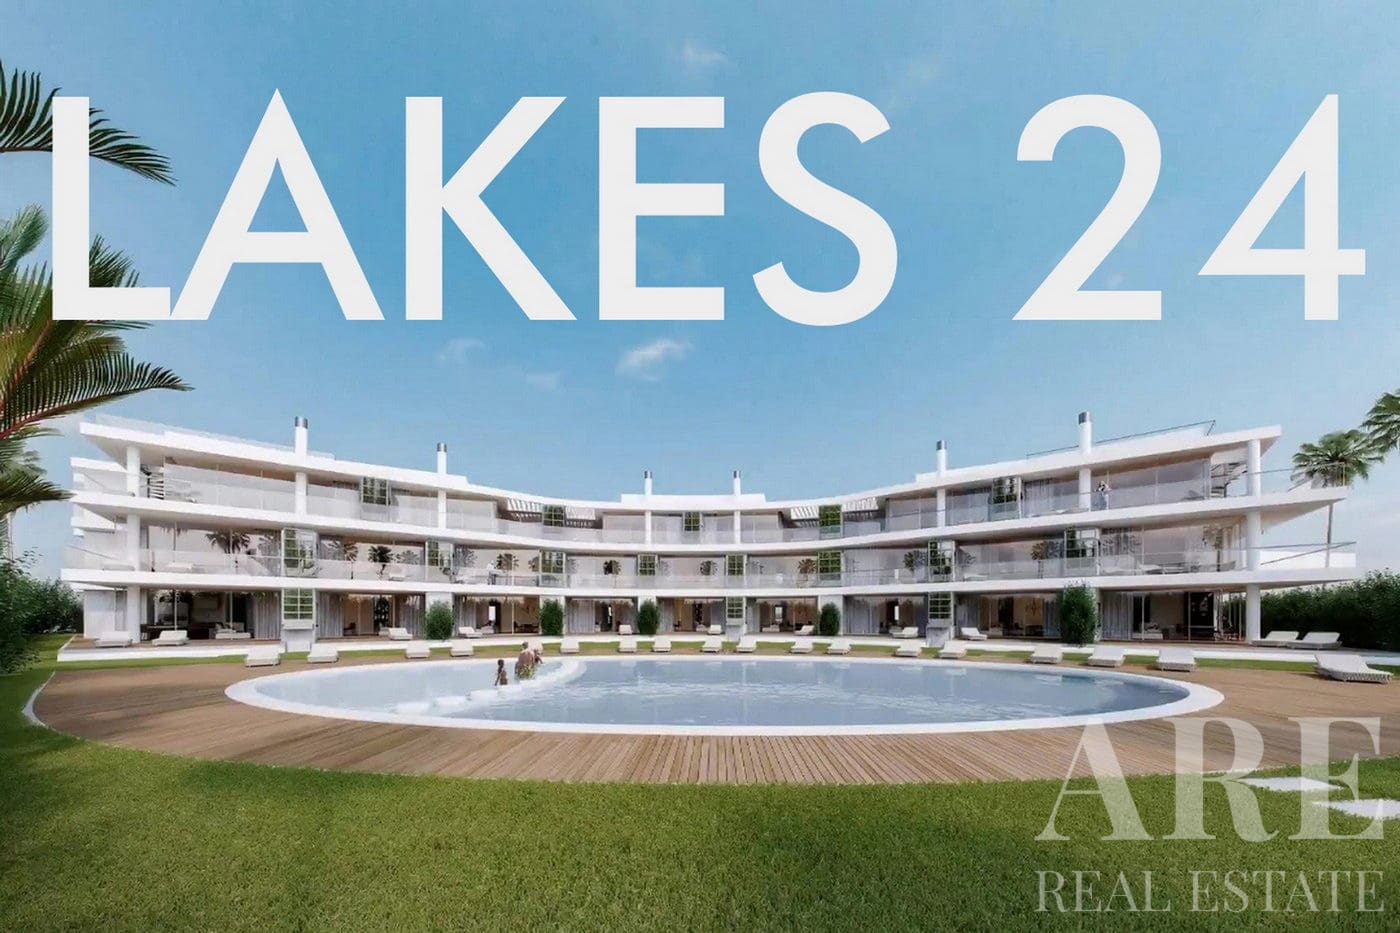 Lakes 24 condominium presentation